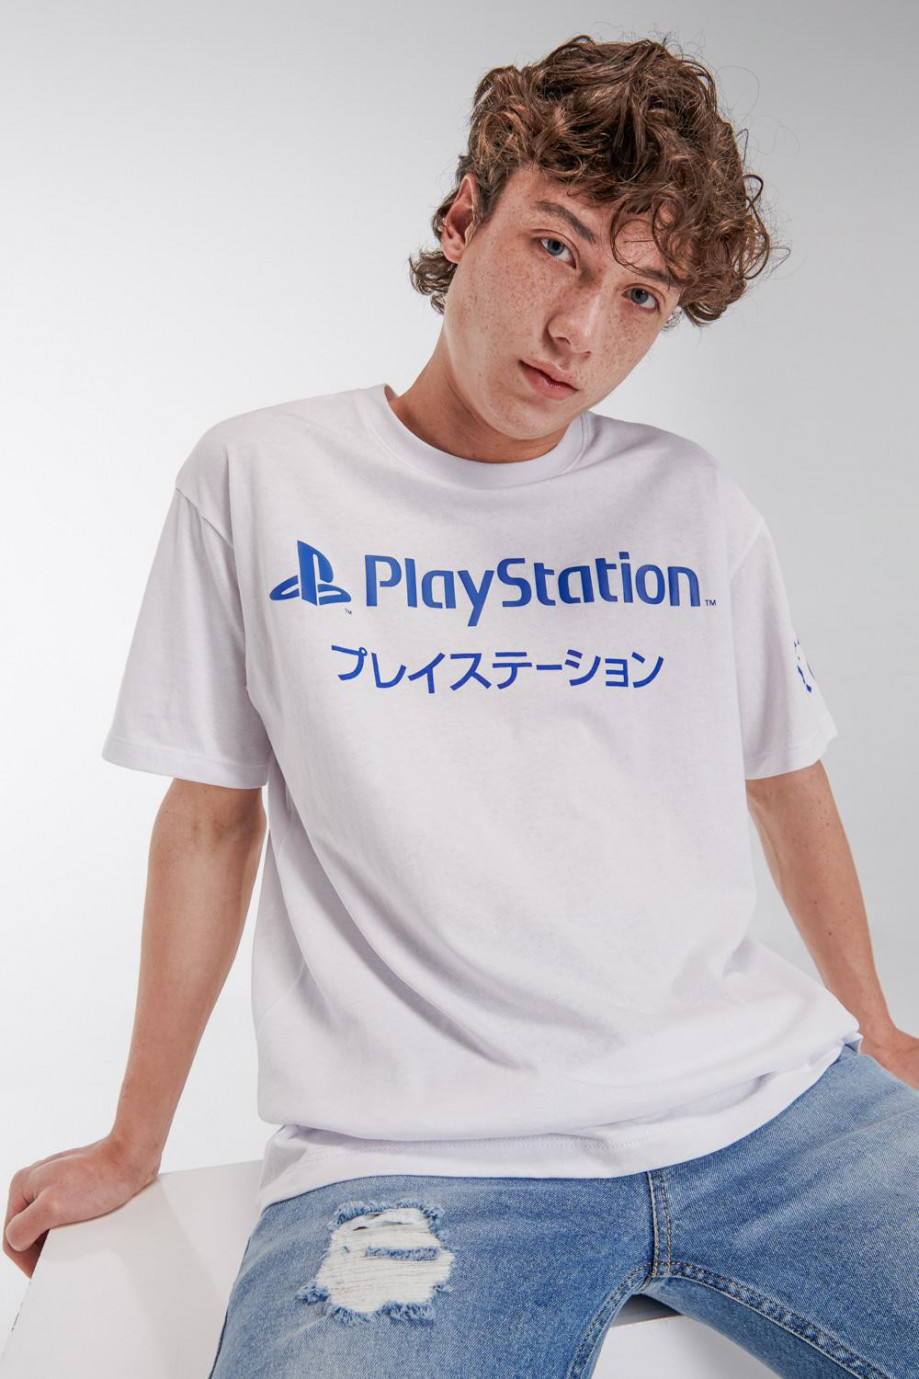 Camiseta cuello redondo, estampada de PlayStation.